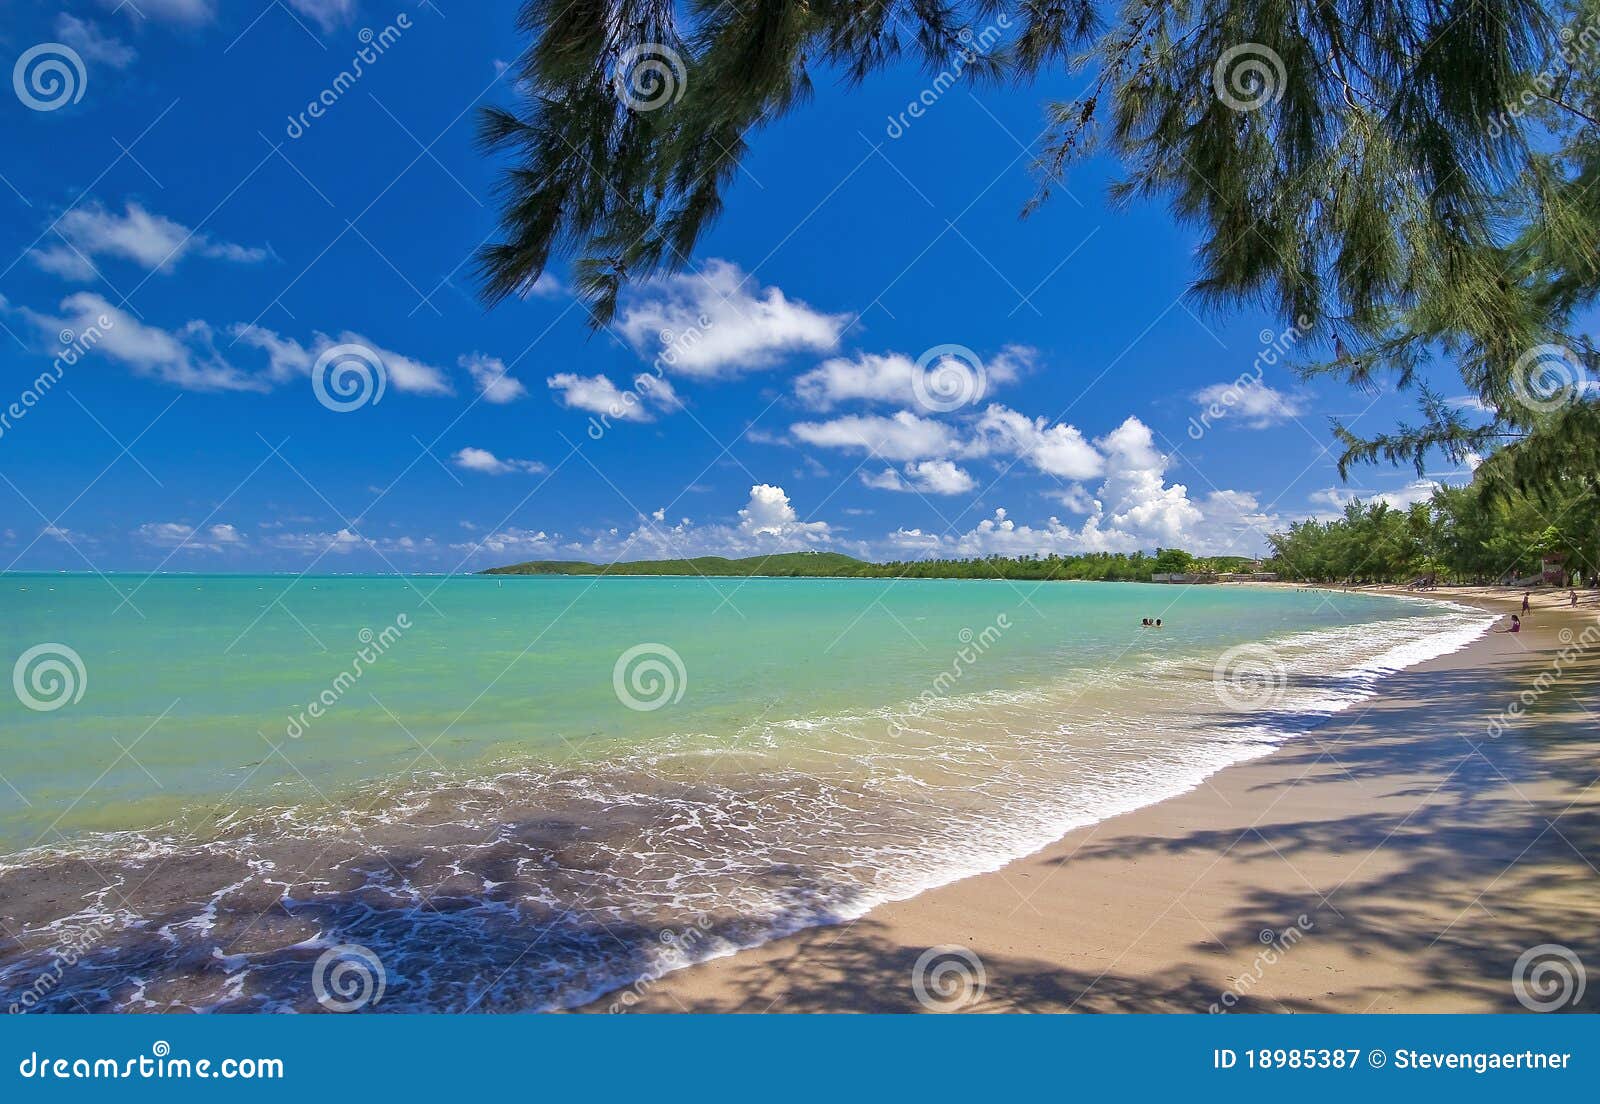 seven seas beach, puerto rico